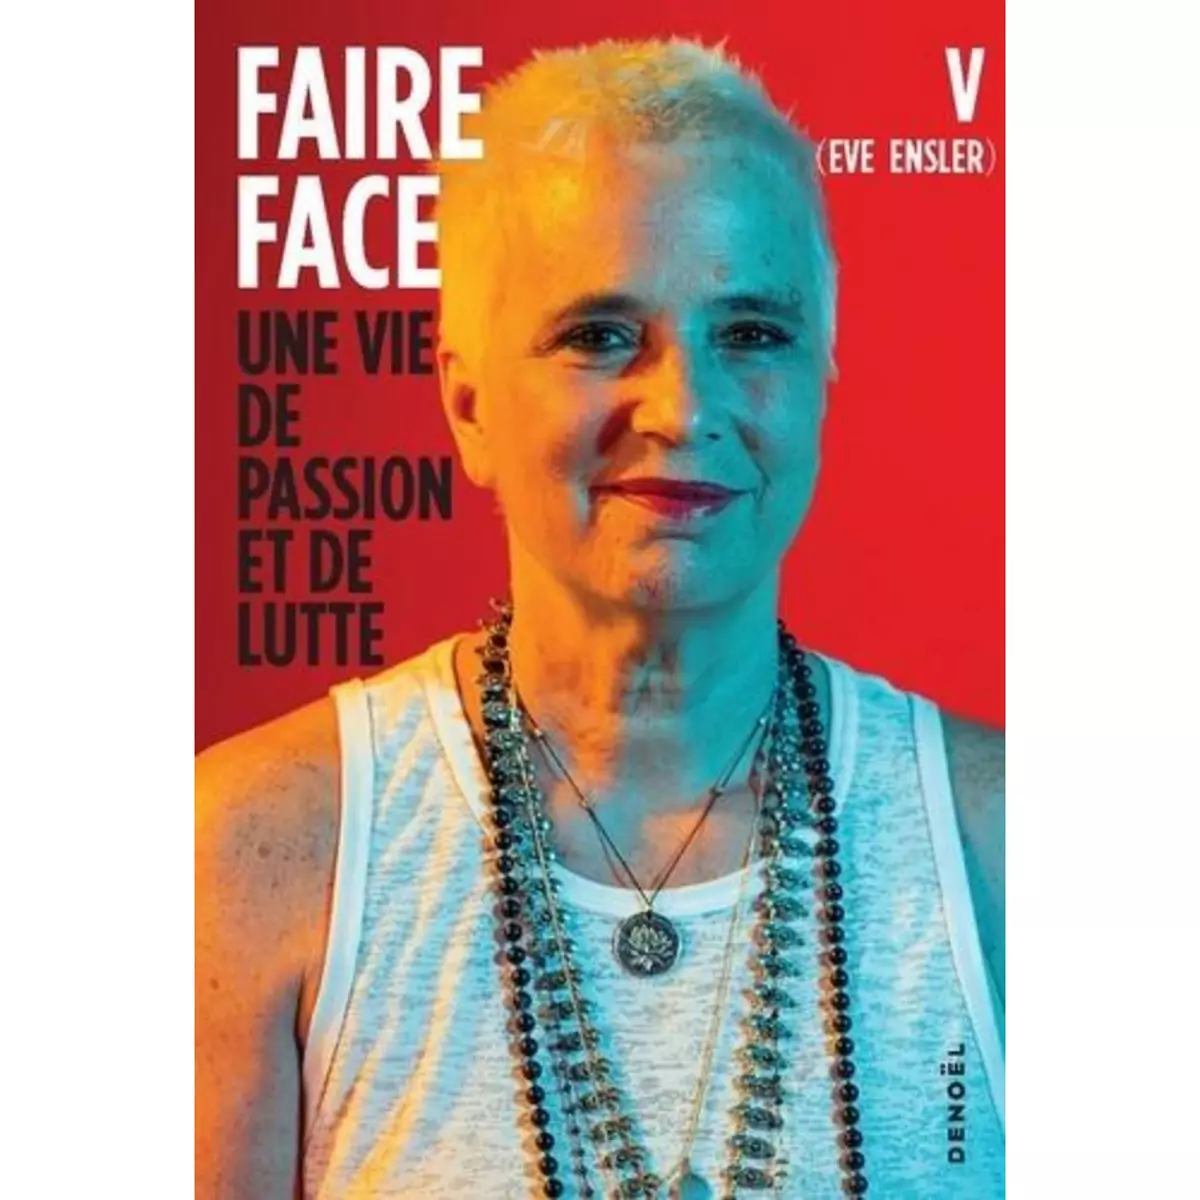  FAIRE FACE. UNE VIE DE LUTTE ET D'ESPOIR, Ensler Eve